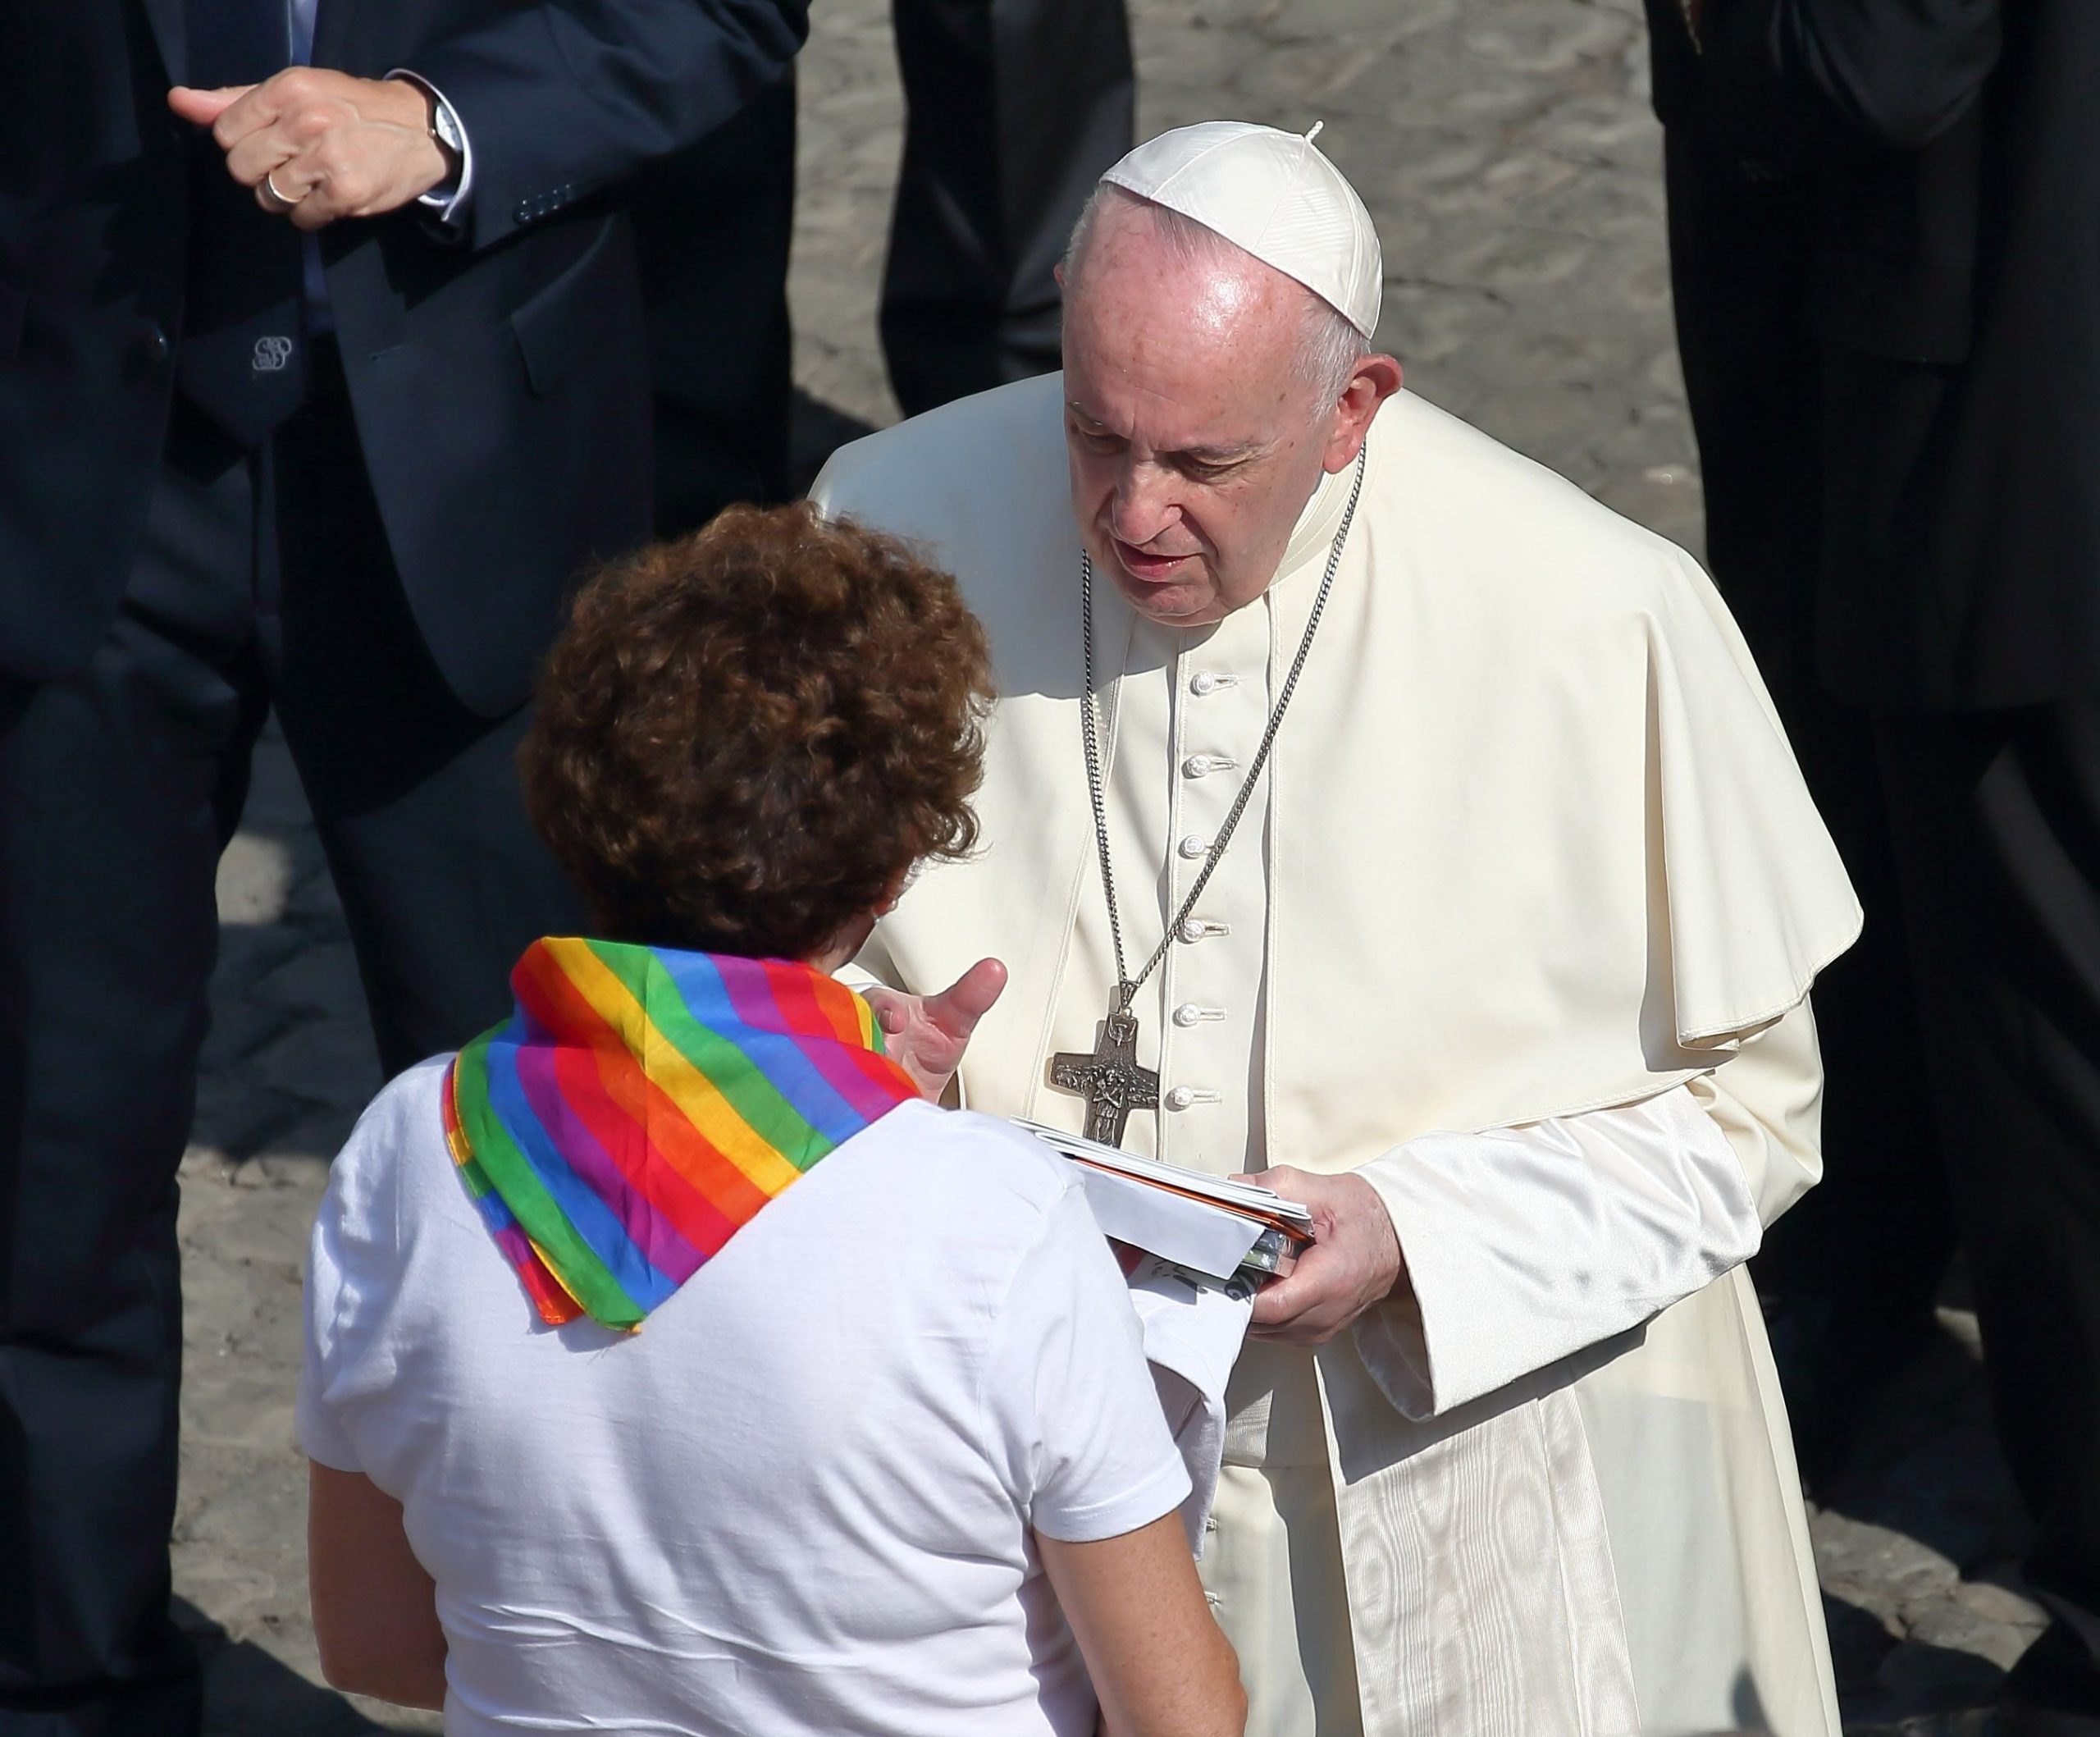  Papa Francisc încurajează un preot care apără persoanele LGBT: Sunteţi preot pentru toţi bărbaţii şi toate femeile, aşa cum Dumnezeu este tată pentru toţi bărbaţii şi toate femeile